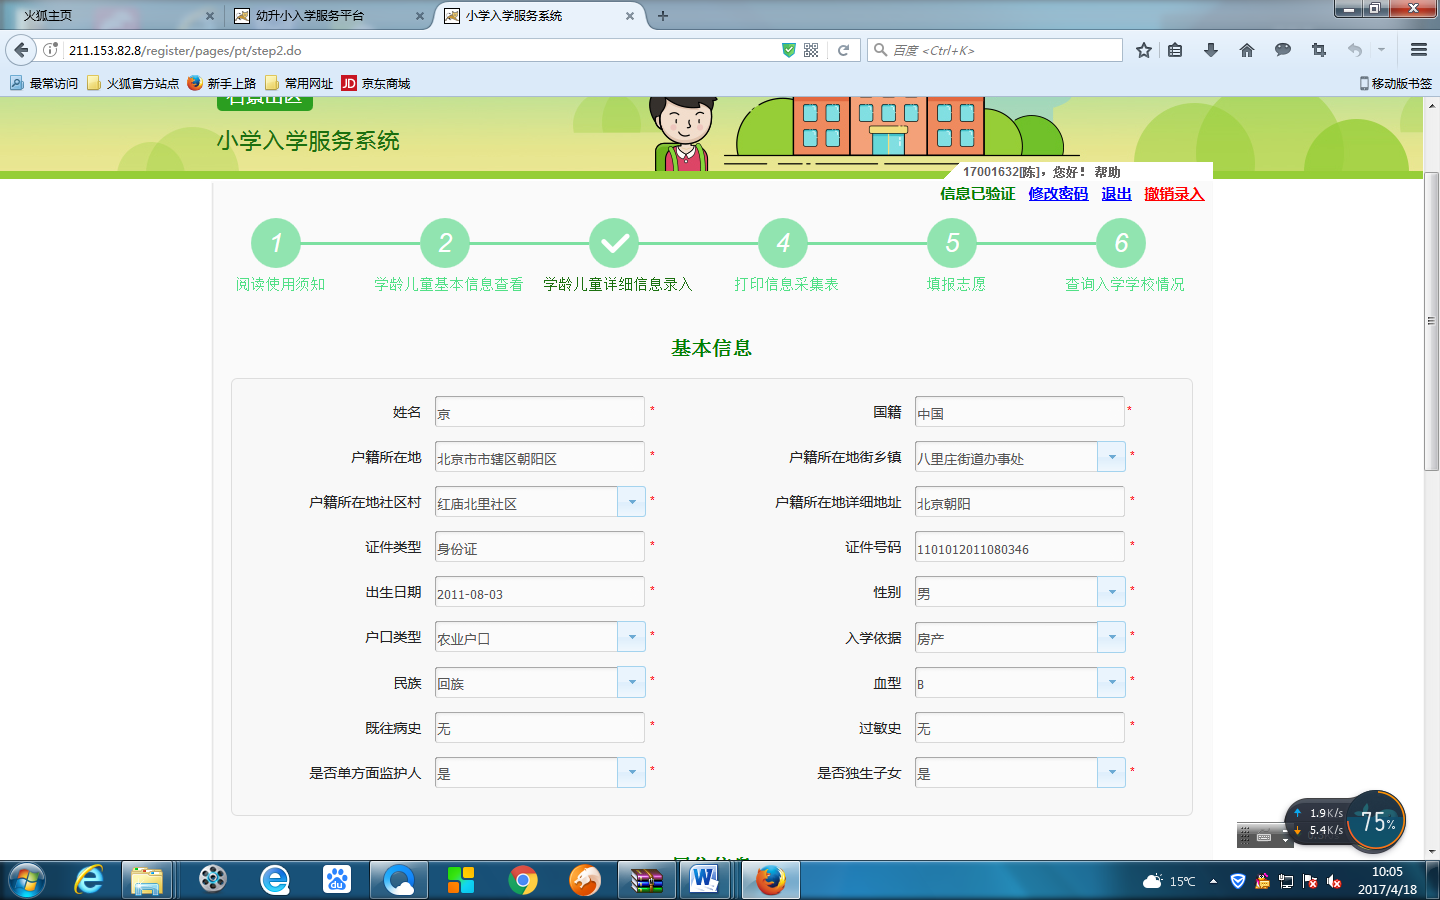 非北京市户籍适龄儿童入学信息采集流程图13